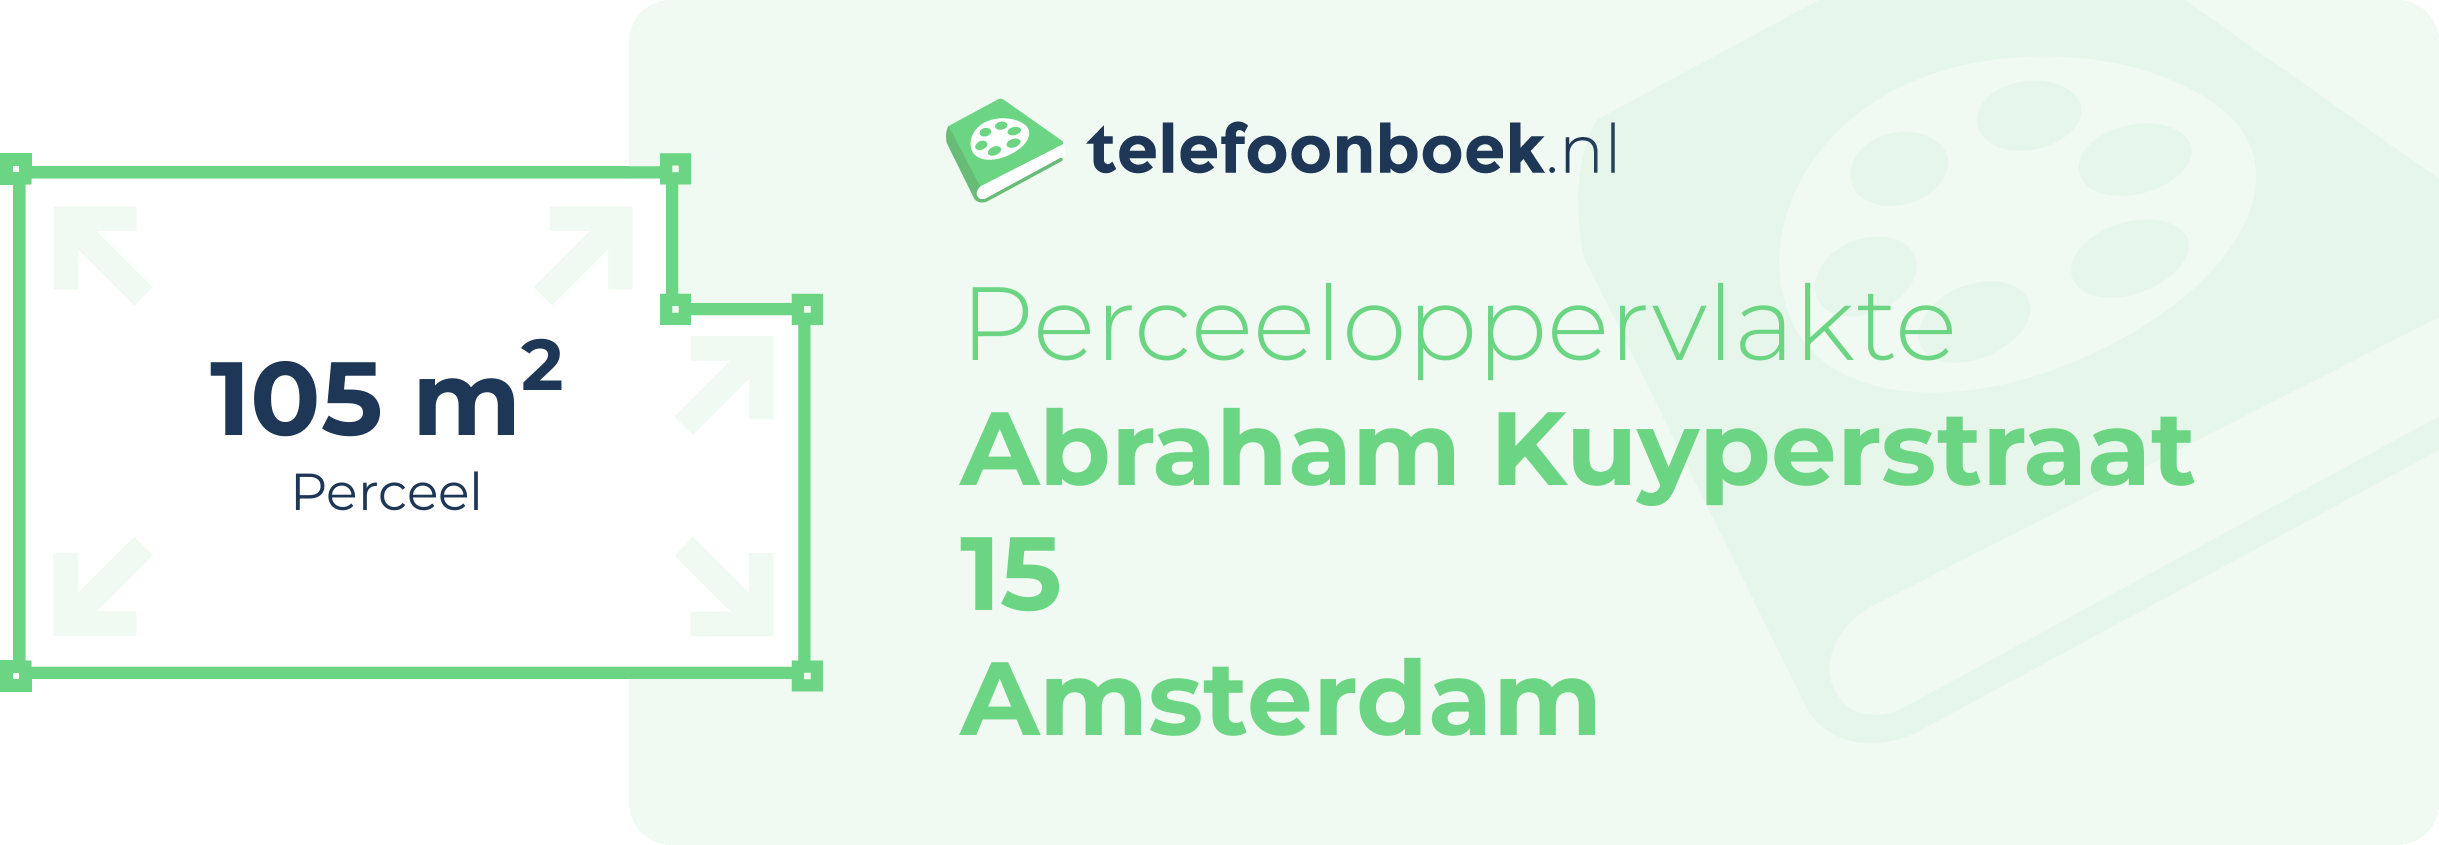 Perceeloppervlakte Abraham Kuyperstraat 15 Amsterdam